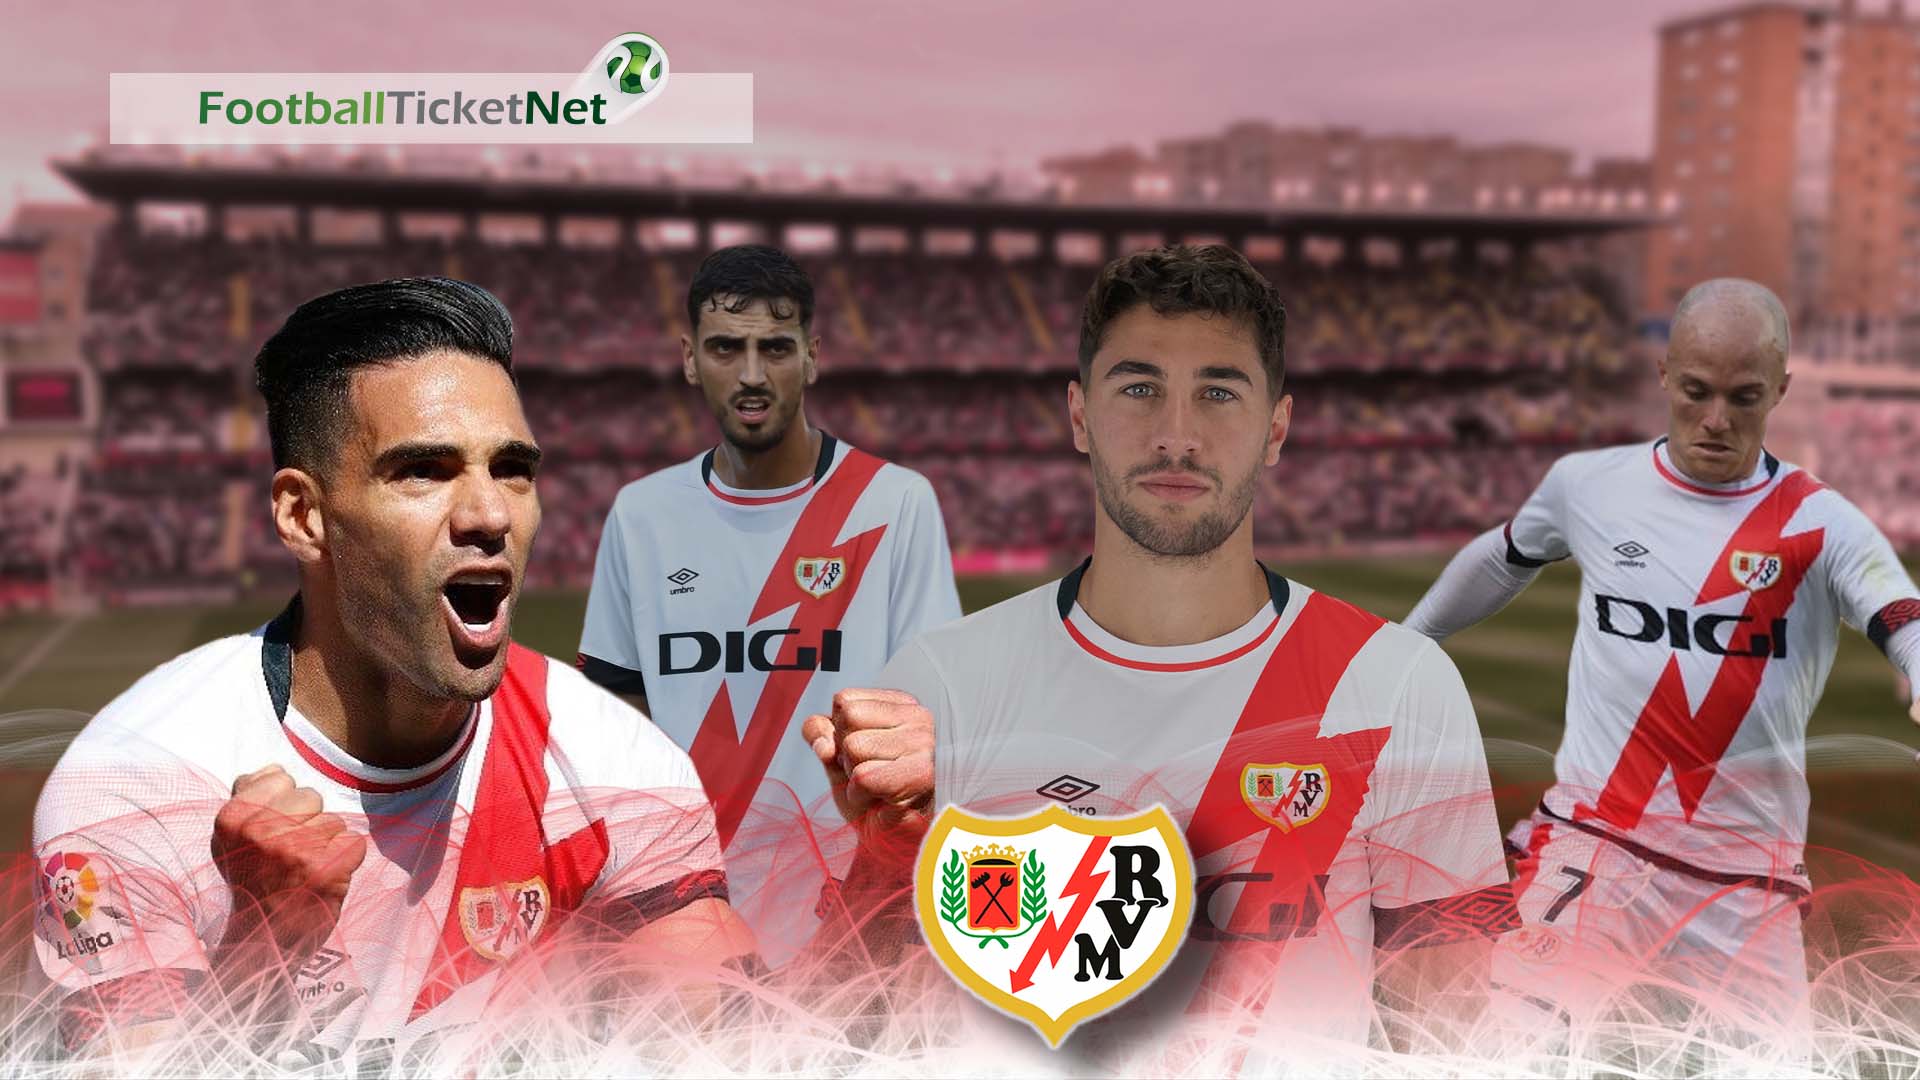 Buy Rayo Vallecano Tickets 2021/22 - Football Ticket Net